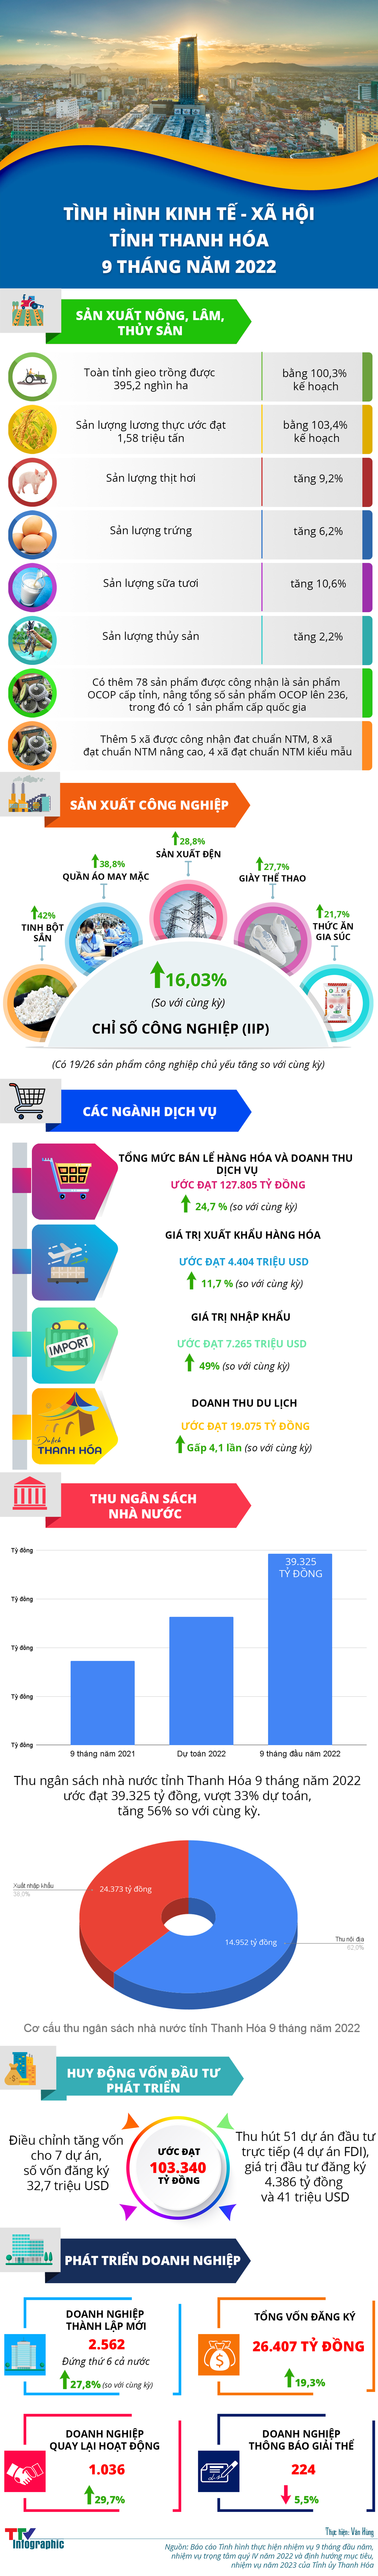 Infographic - Tình hình kinh tế - xã hội tỉnh Thanh Hóa 9 tháng năm 2022